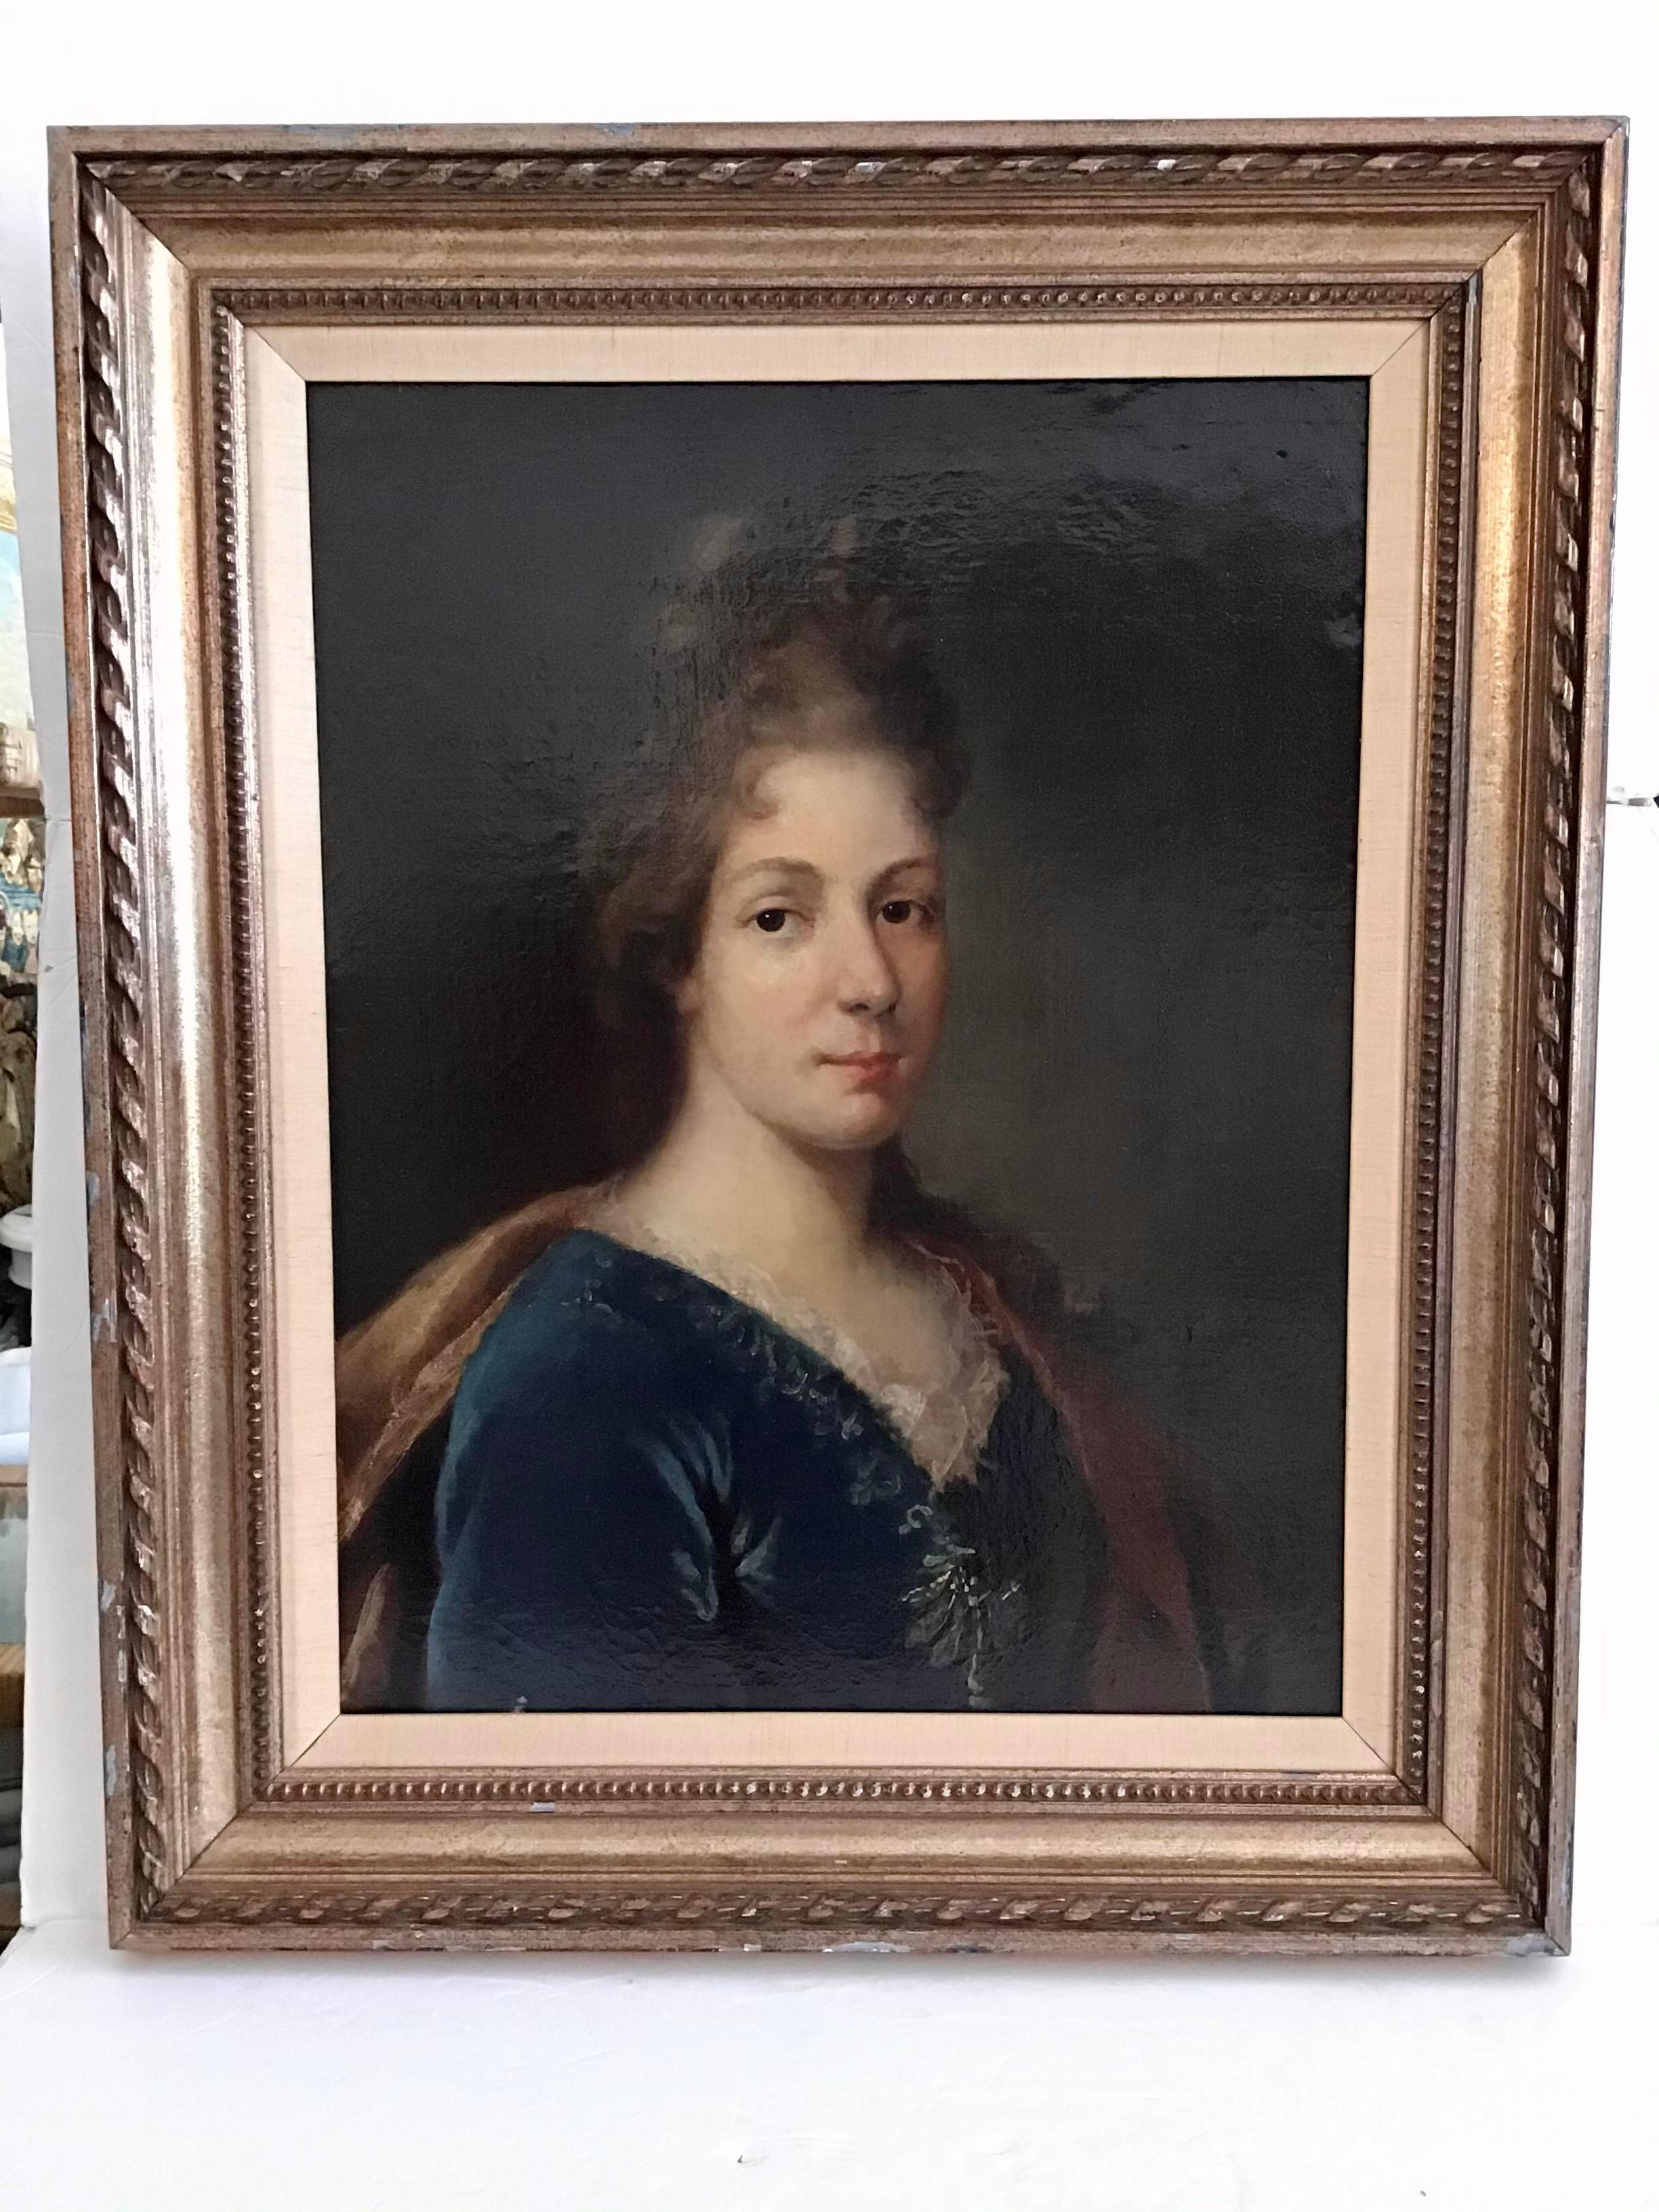 Merveilleux portrait peint du 18ème siècle d'une femme noble française. Le cadre est joliment sculpté et la toile est en excellent état. Style français classique.